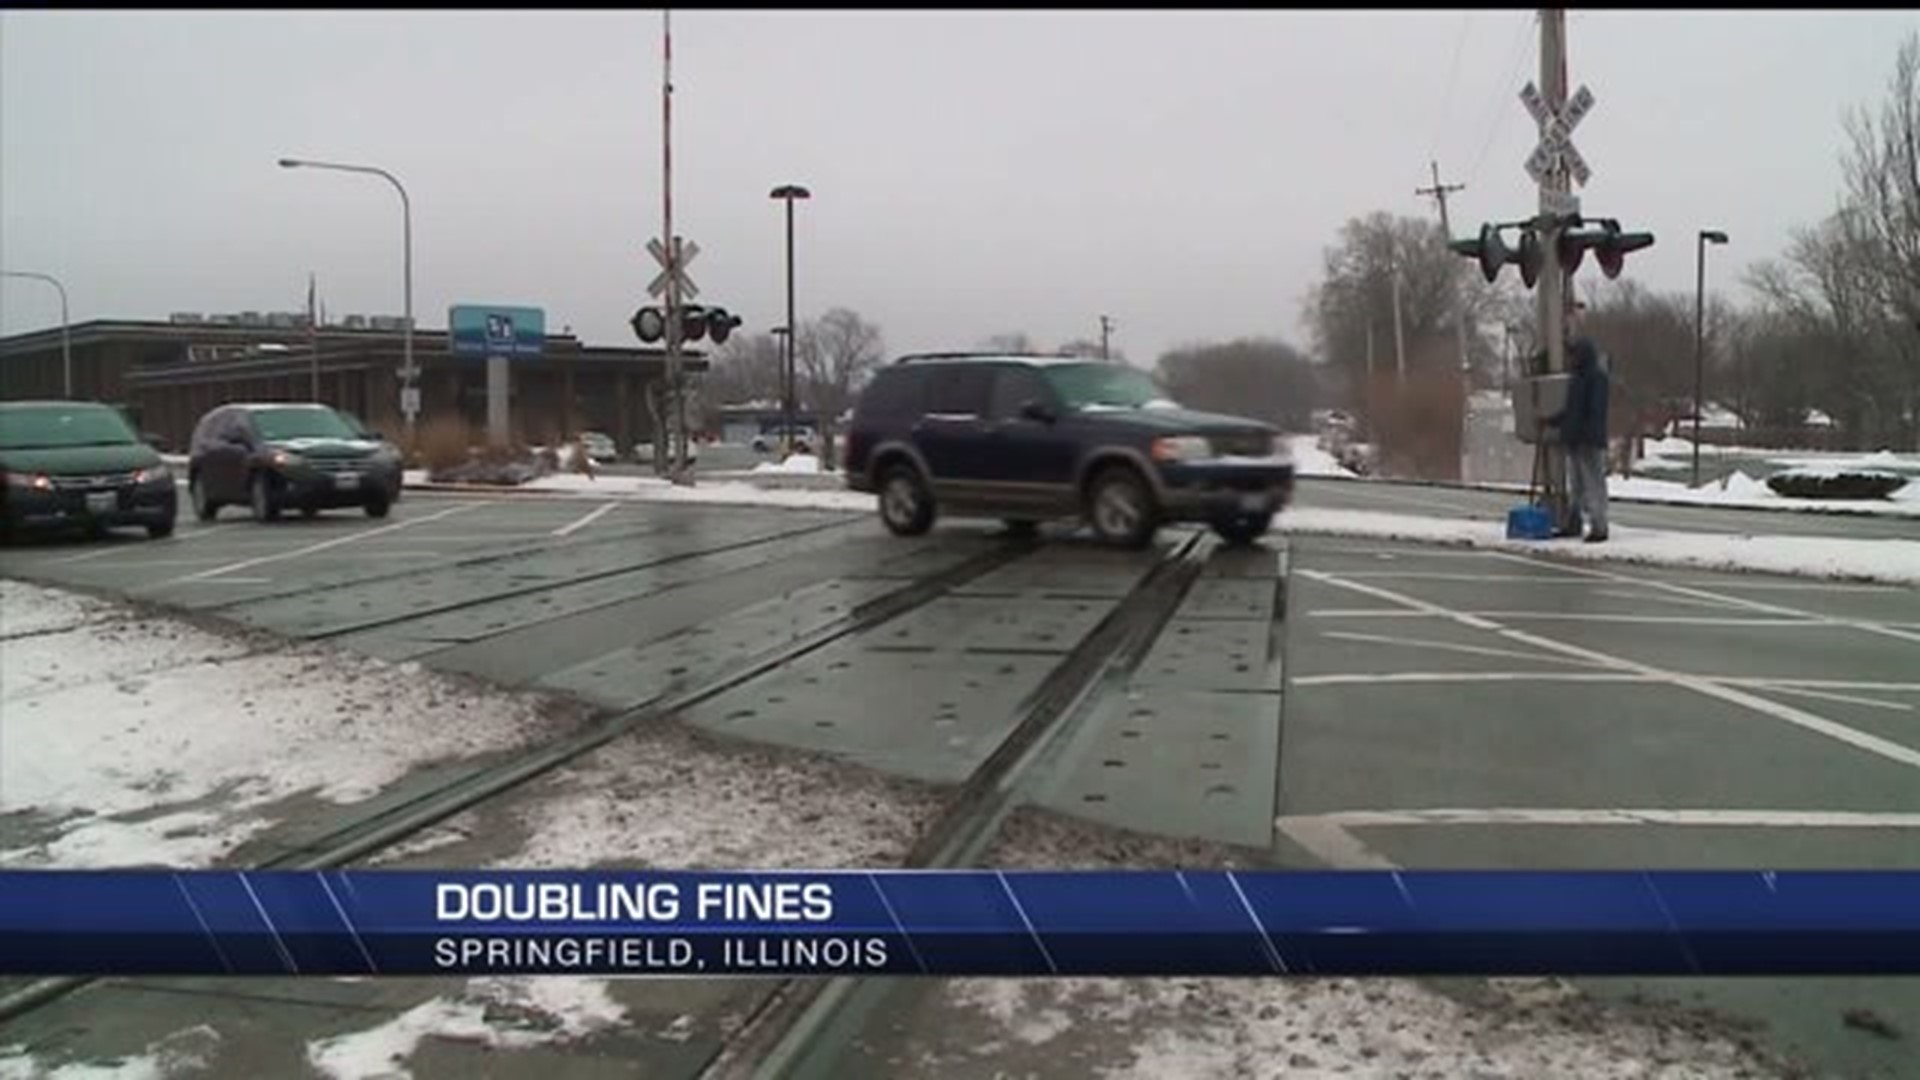 Illinois railroad fines doubling